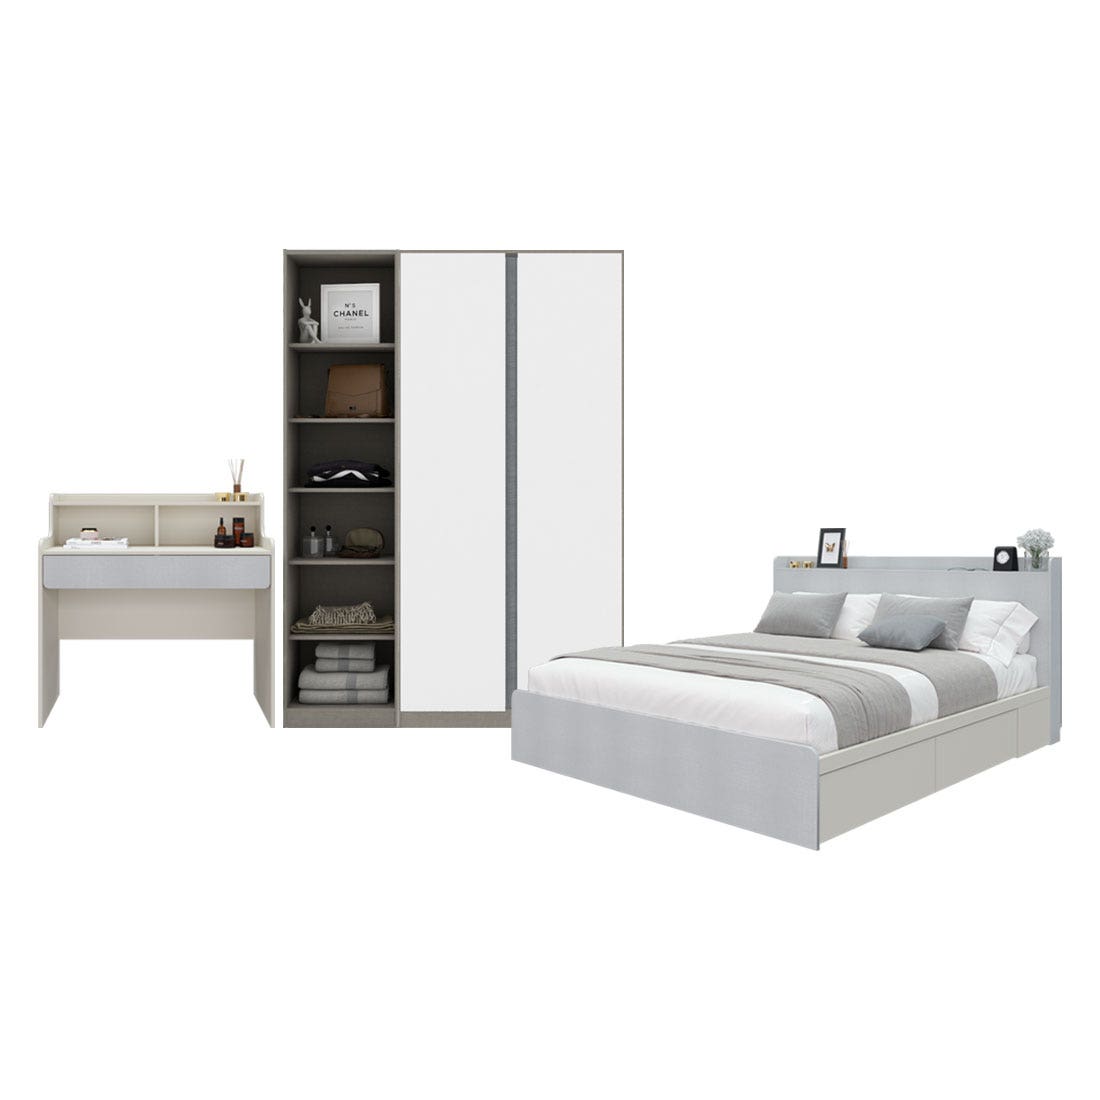 ชุดห้องนอน 6 ฟุต & โต๊ะเครื่องแป้ง  & ตู้ Blox 150 ซม. สีขาว01